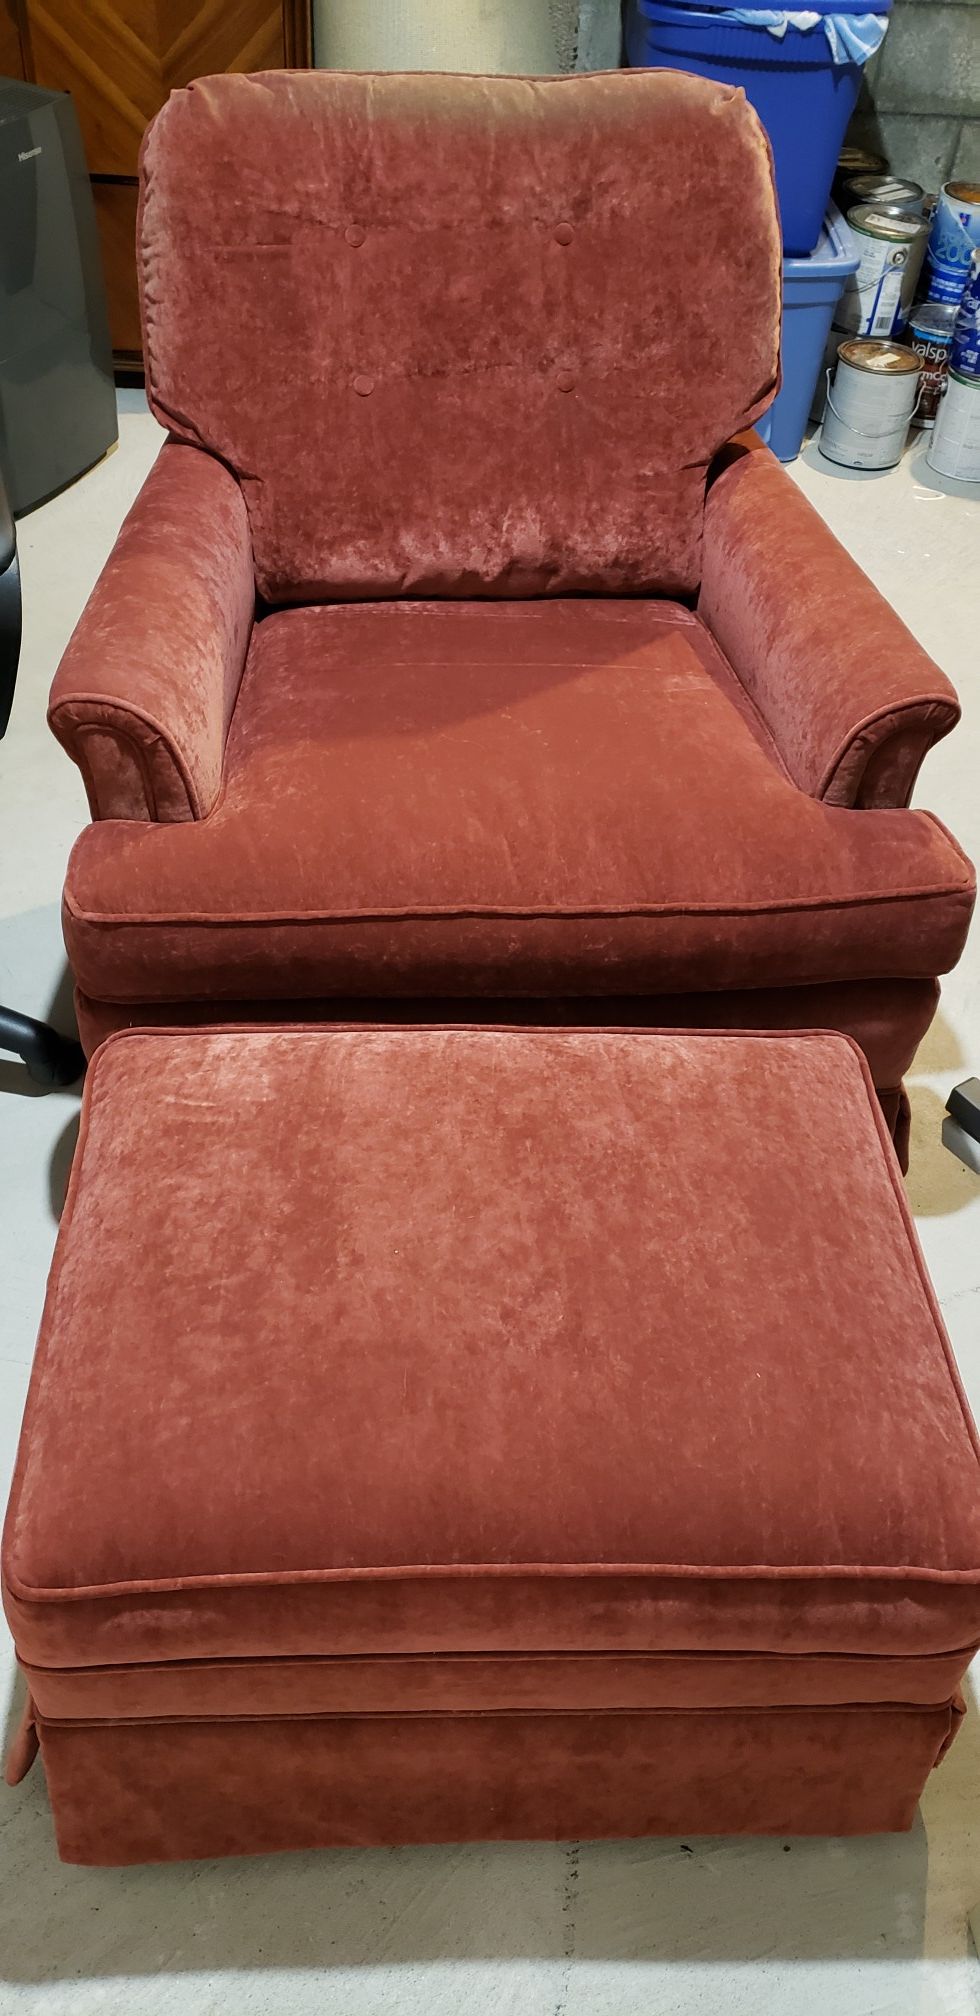 Chair and ottoman, sofa